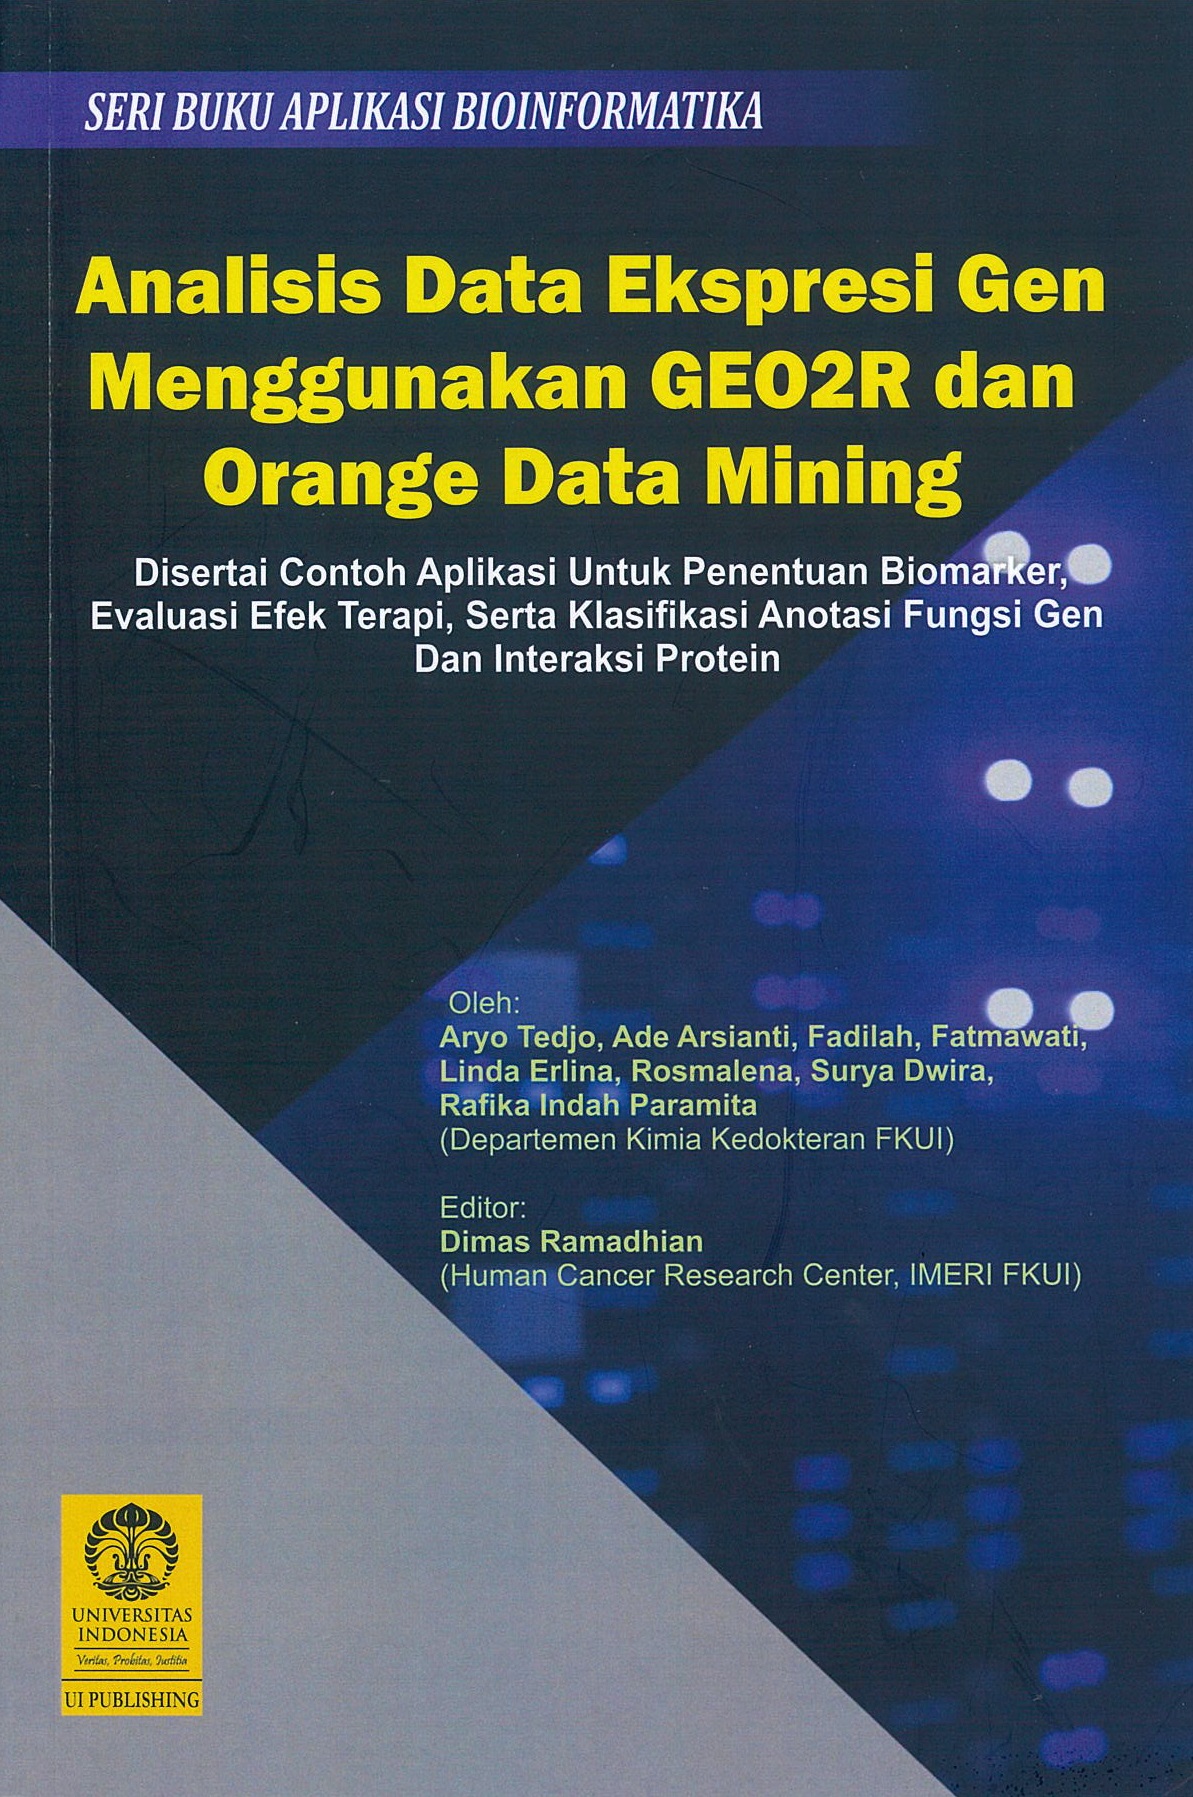 Analisis data ekspresi gen menggunakan GEO2R dan orange data mining :  disertai contoh aplikasi untuk penentuan biomarker, evaluasi efek terapi, serta klasifikasi anotasi fungsi gen dan interaksi protein